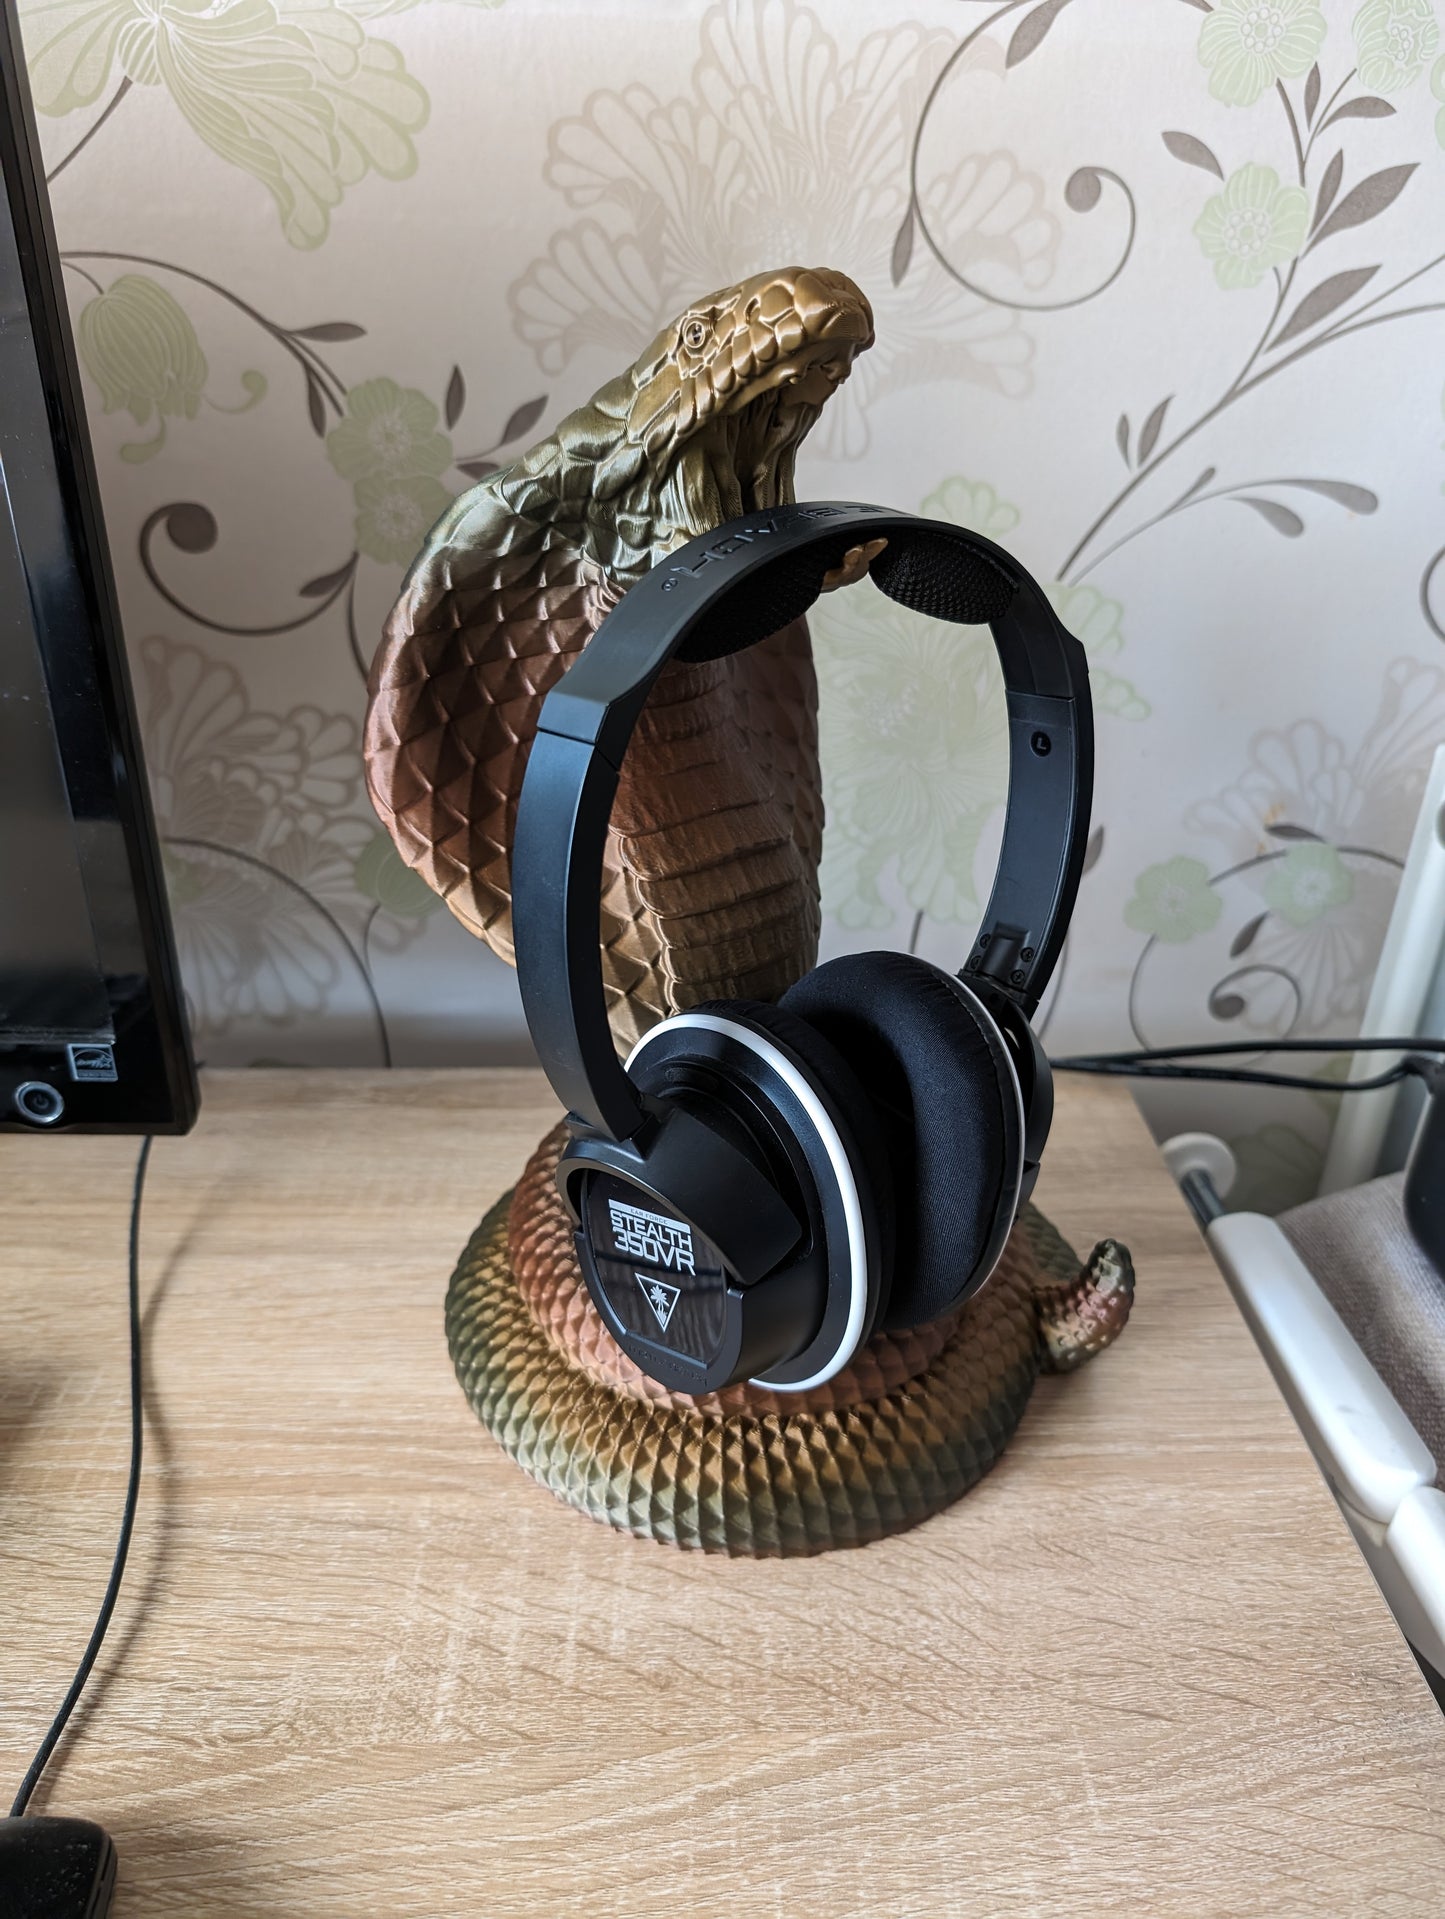 Cobra snake headphone holder on desk from side angle